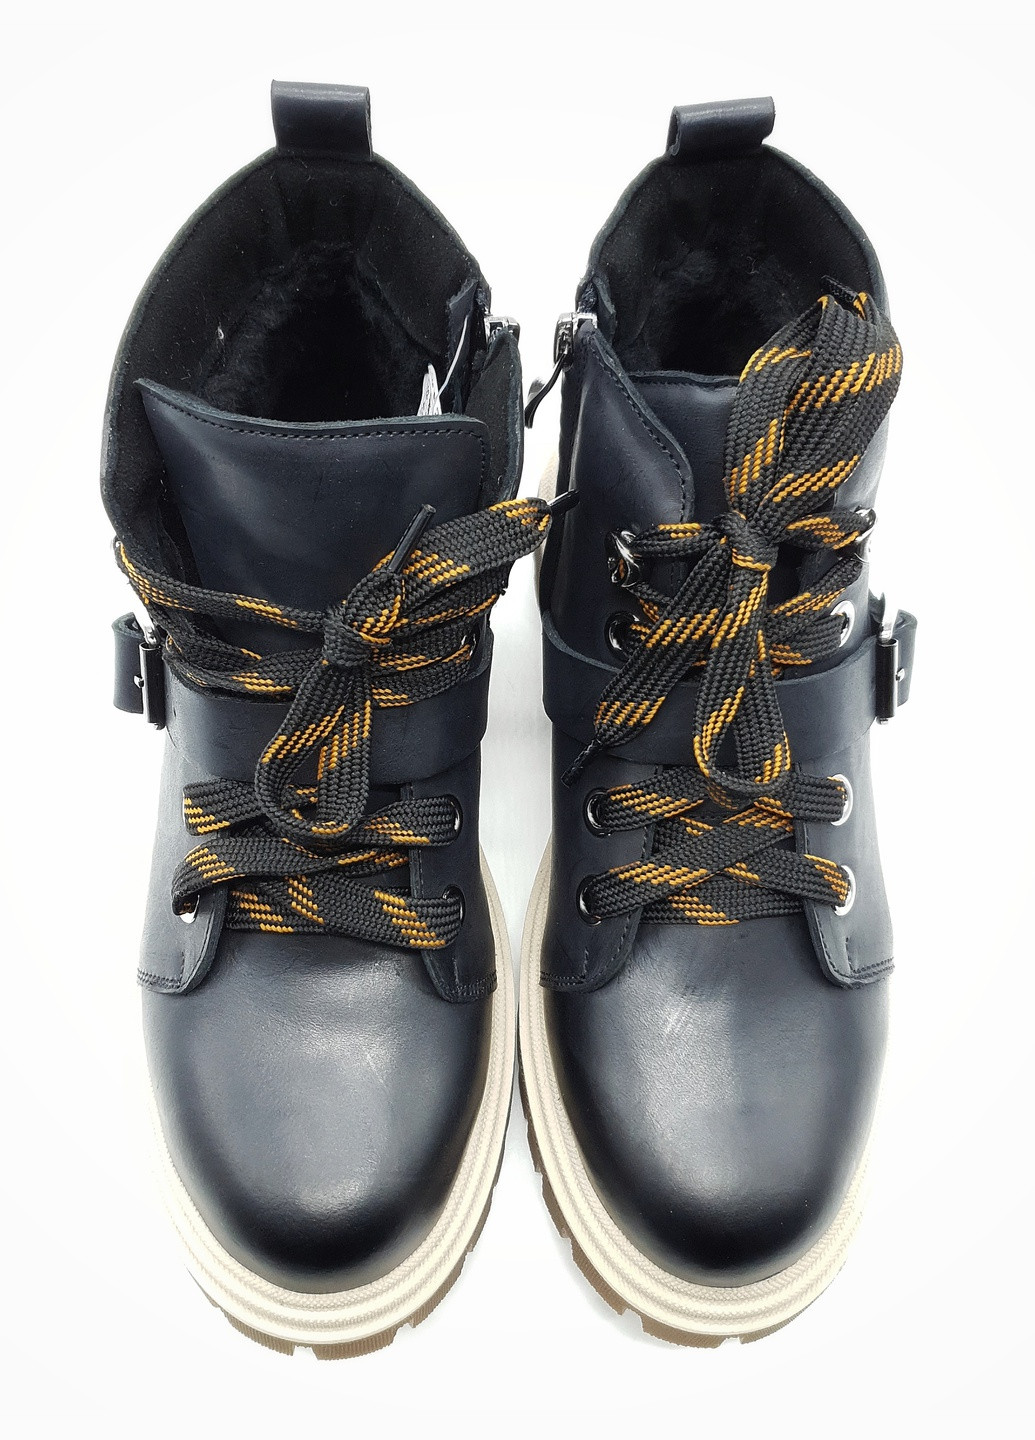 Осенние женские ботинки зимние черные кожаные vn-10-2 25,5 см (р) VALIENTE